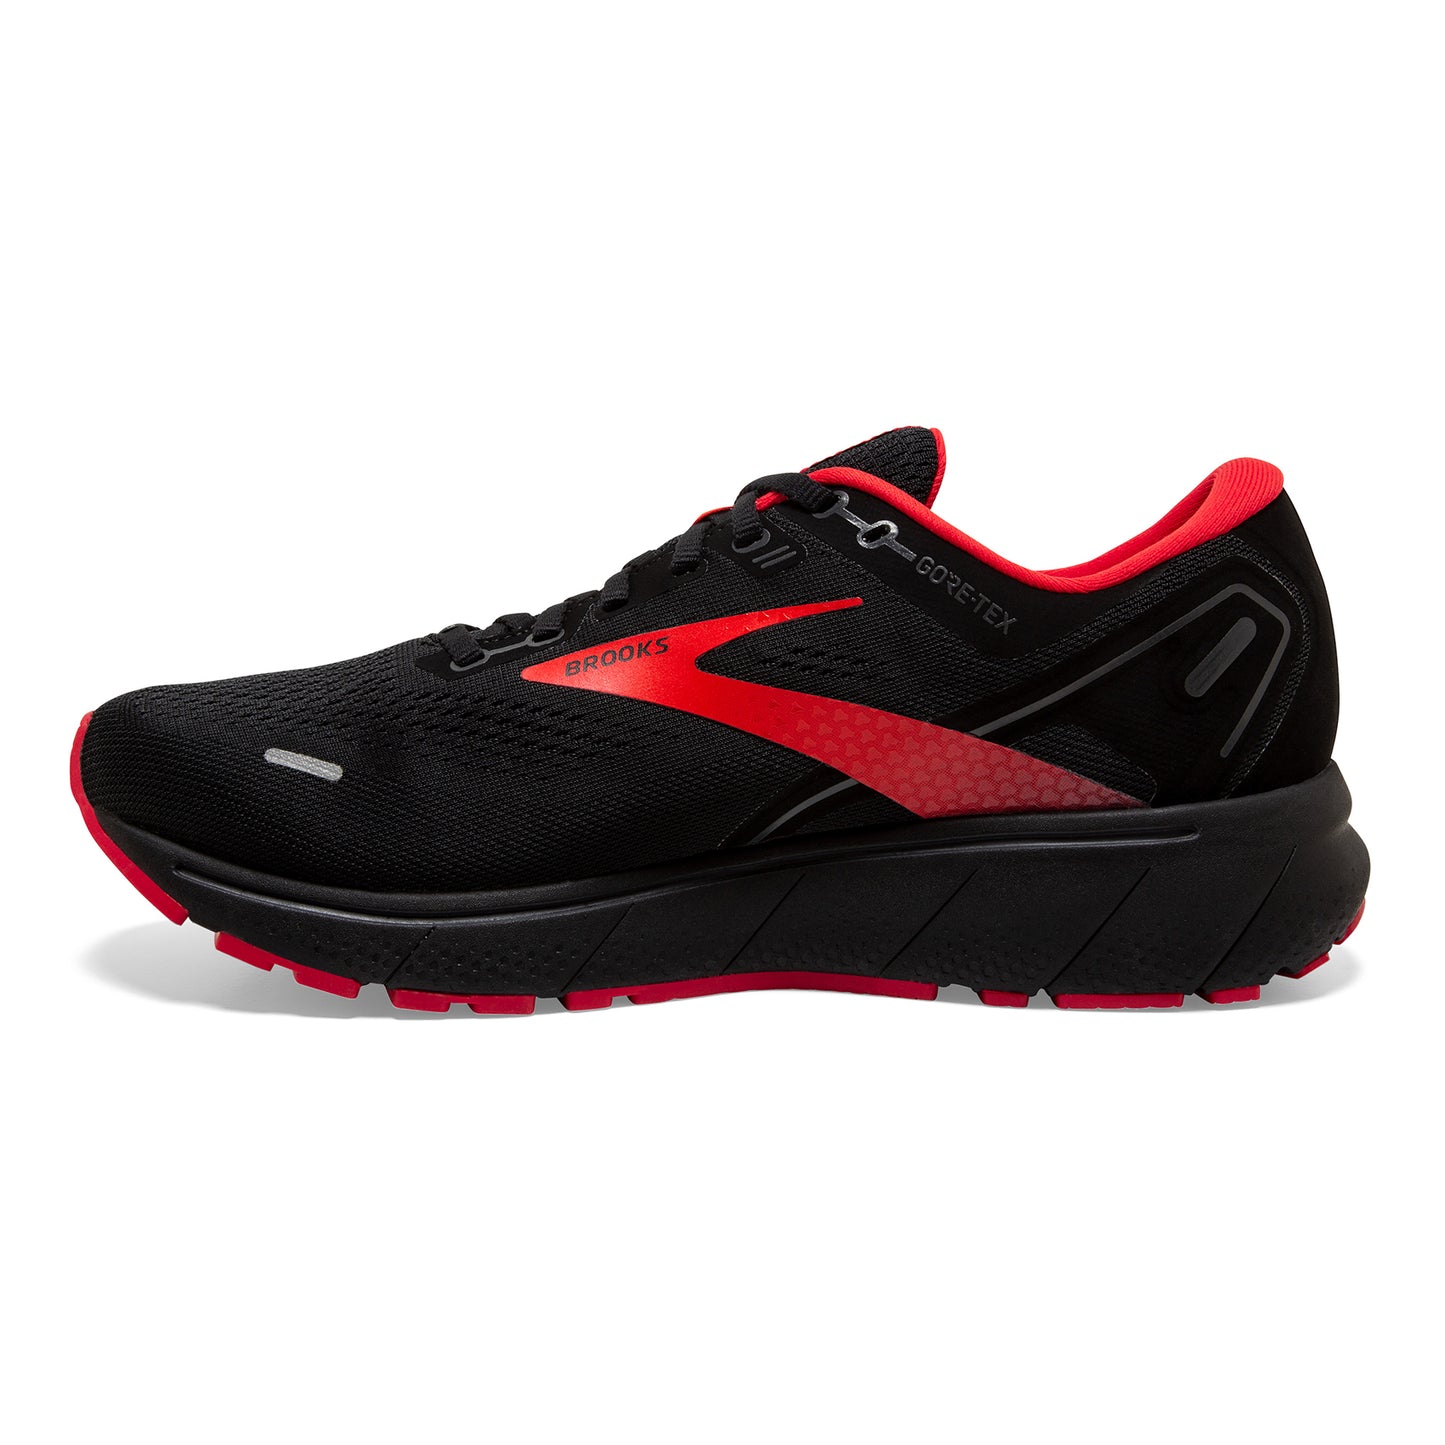 Men's Ghost 14 GoreTEX Running Shoe - Black/Blackened Pearl/High Risk Red — Regular (D)